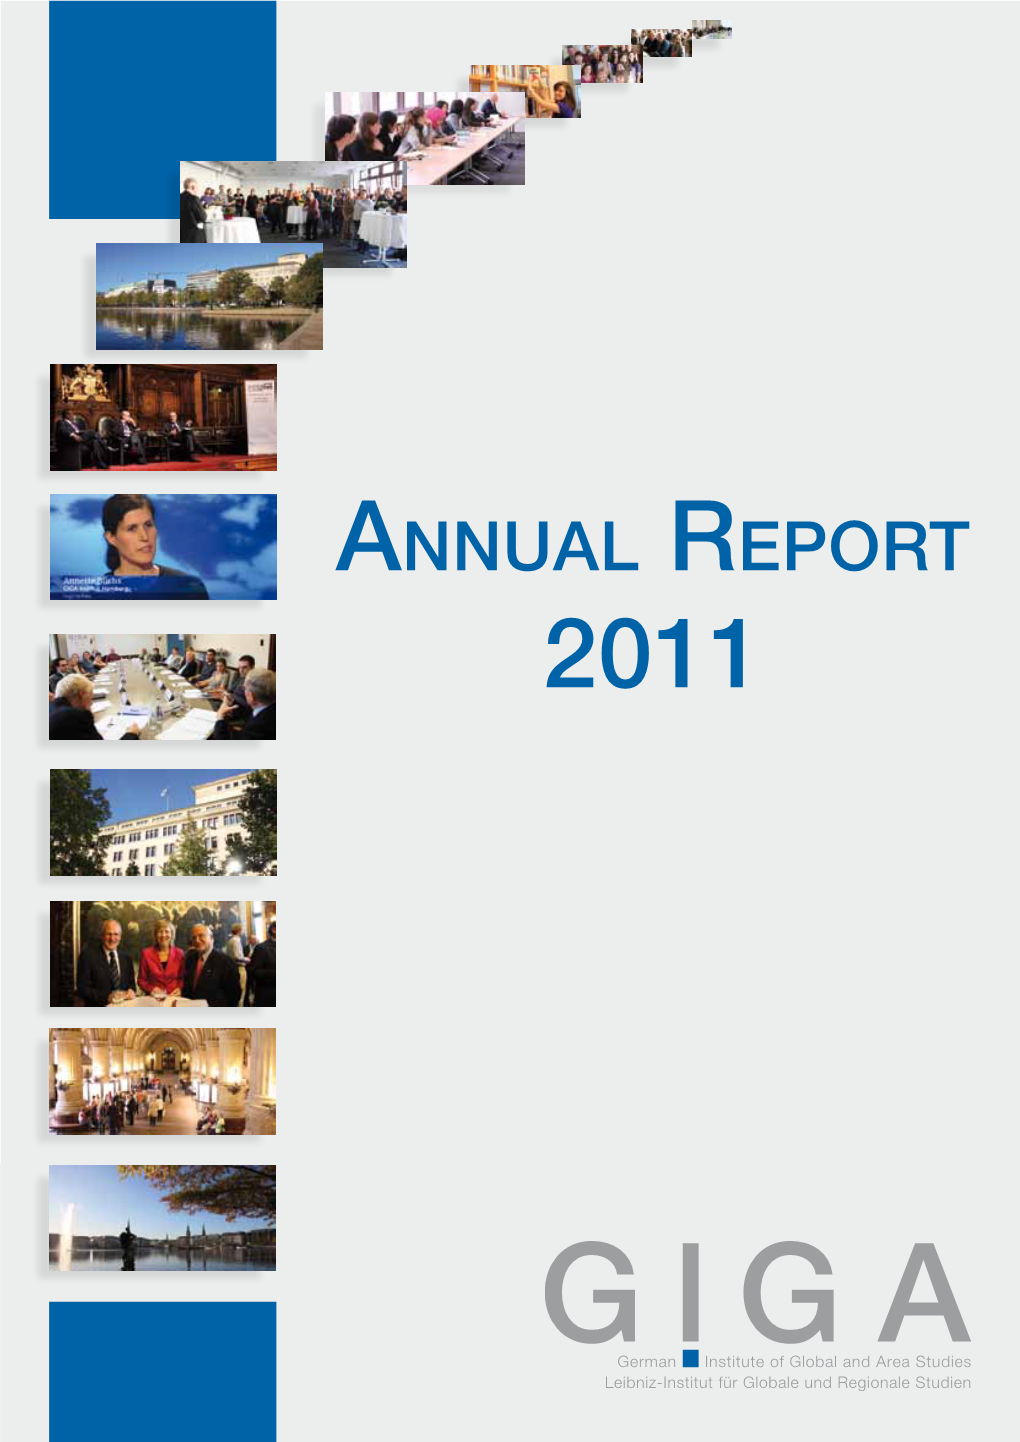 GIGA Annual Report 2011 - 3 - Preface